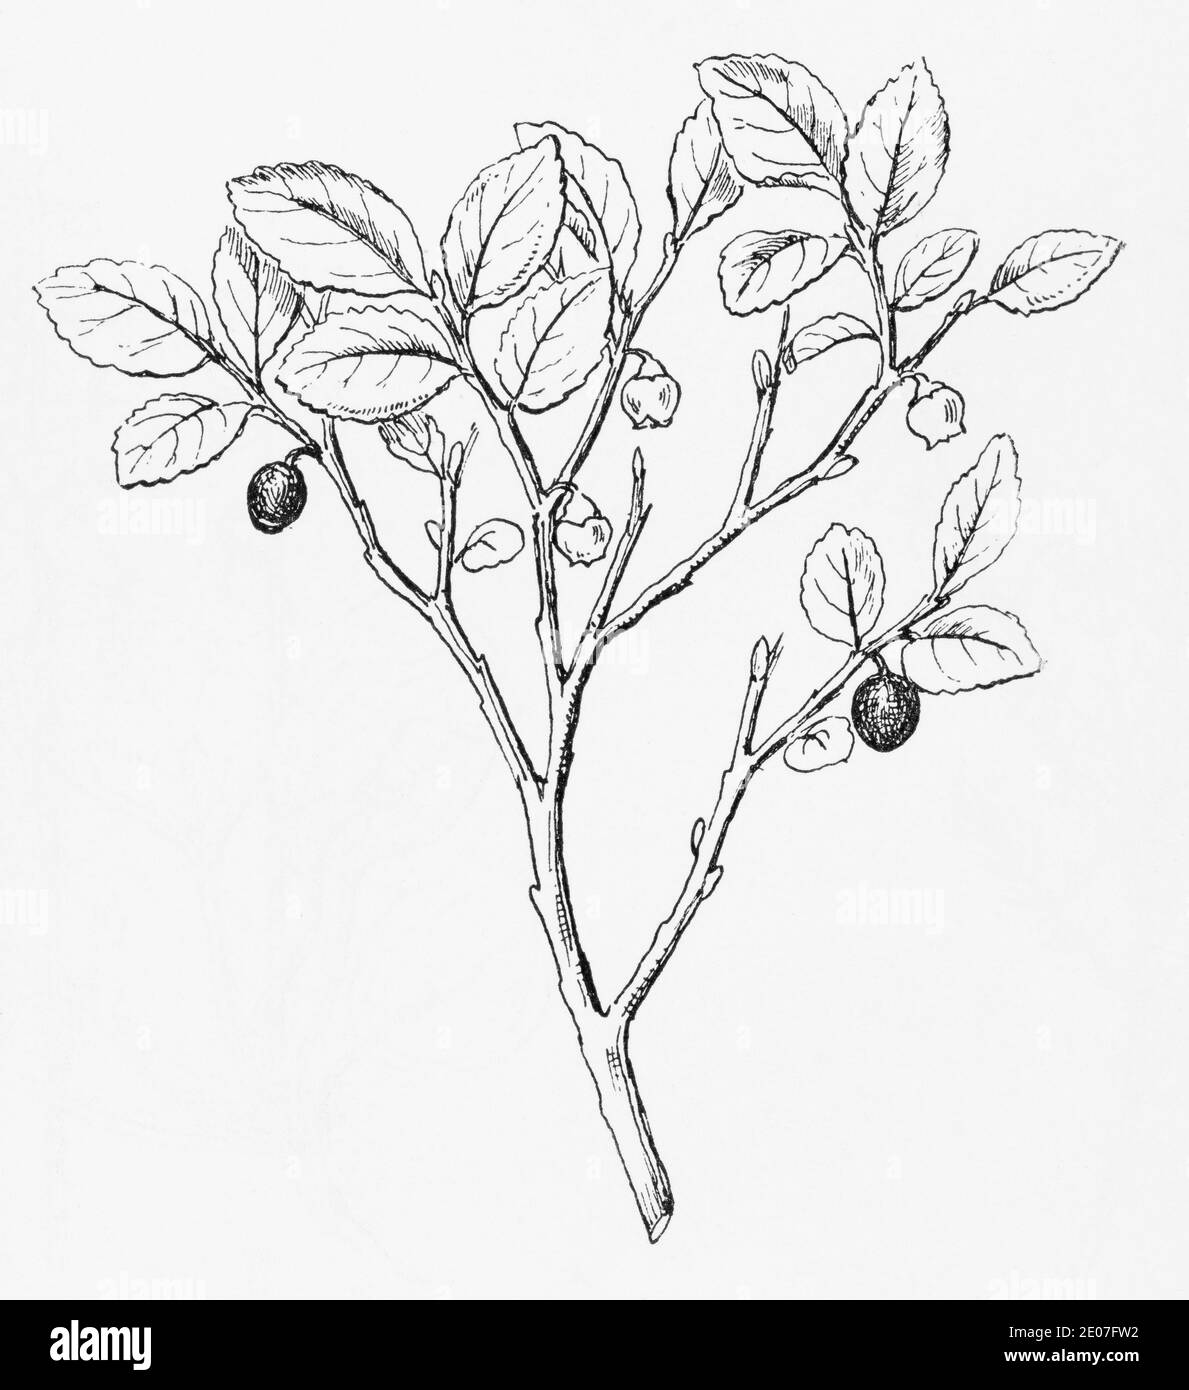 Ancienne gravure d'illustration botanique de Bilberry, Whortleberry / Vaccinium myrtillus. Plante médicinale traditionnelle. Voir Remarques Banque D'Images